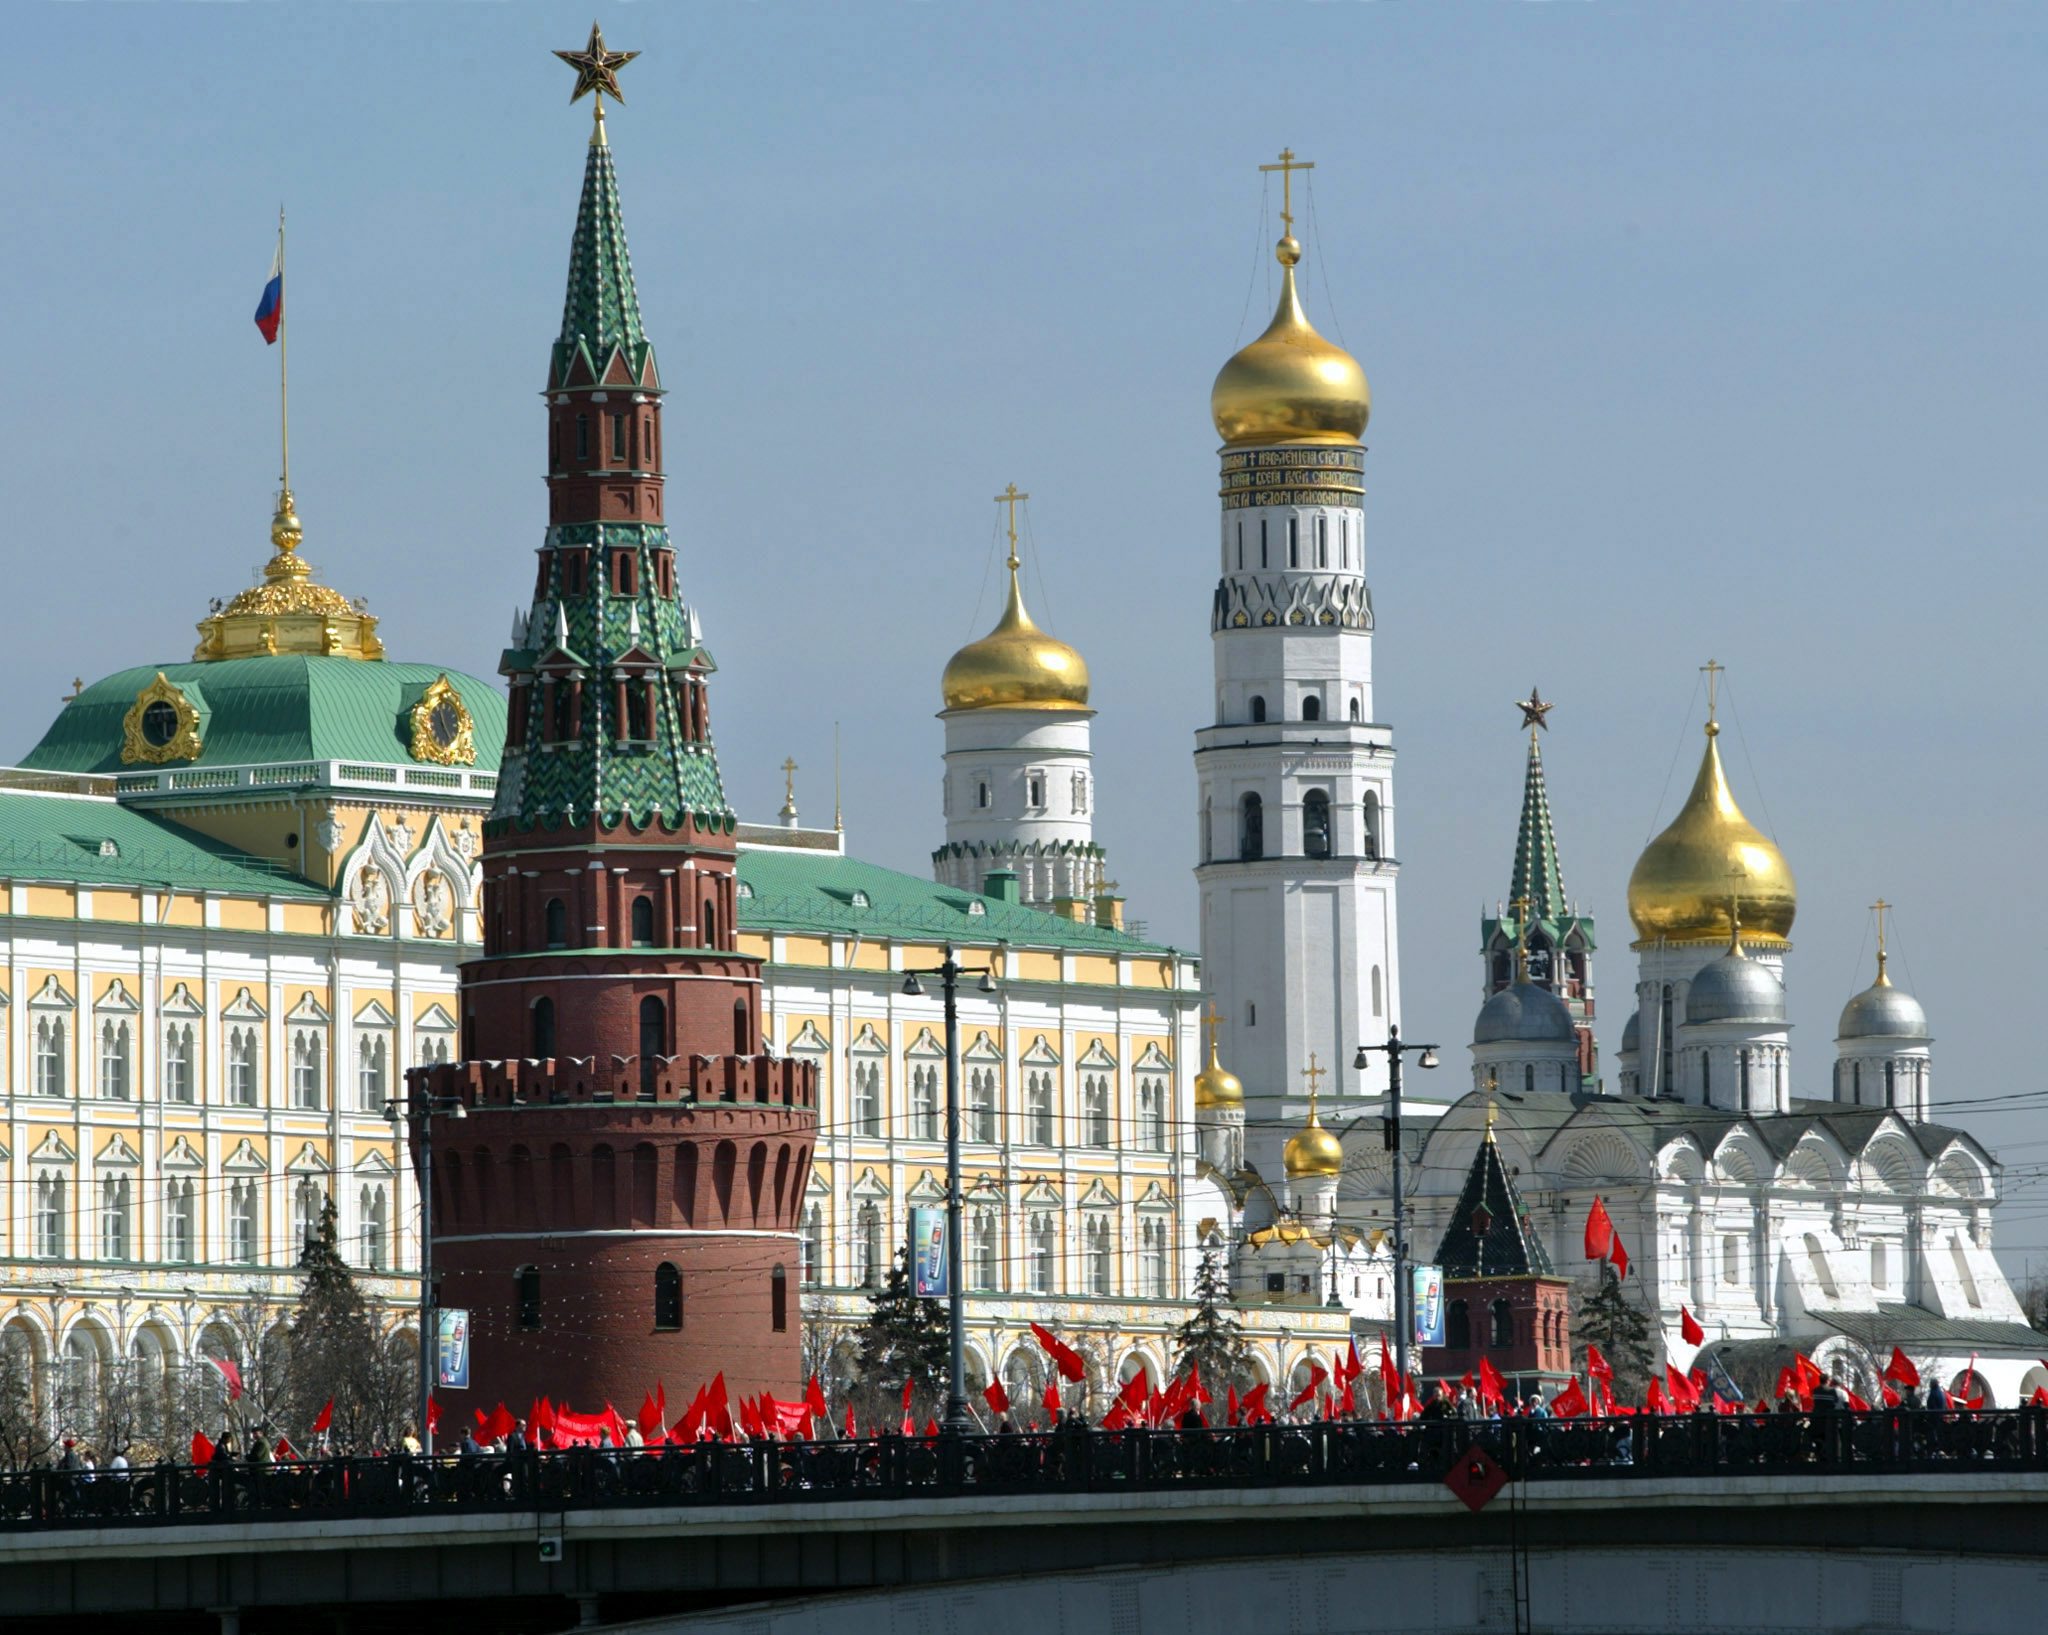 Κρεμλίνο – Περισσότερες αμερικανικές κυρώσεις θα υπονομεύσουν τις ελπίδες για τον διάλογο των δύο χωρών